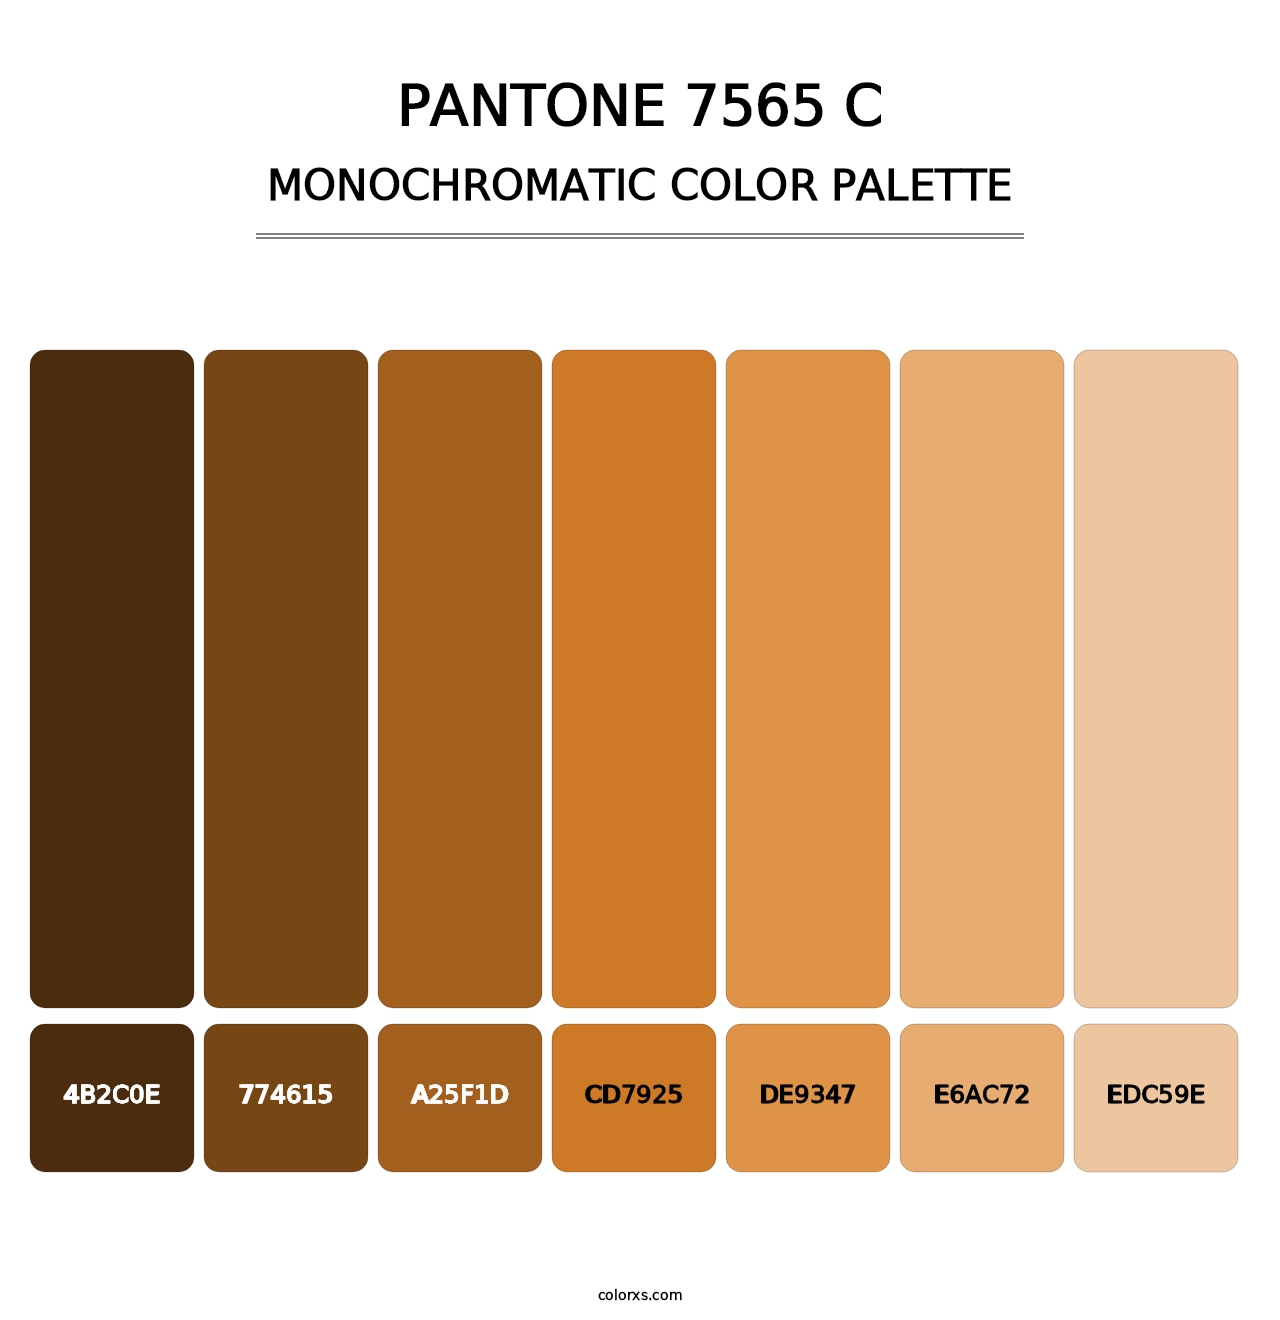 PANTONE 7565 C - Monochromatic Color Palette